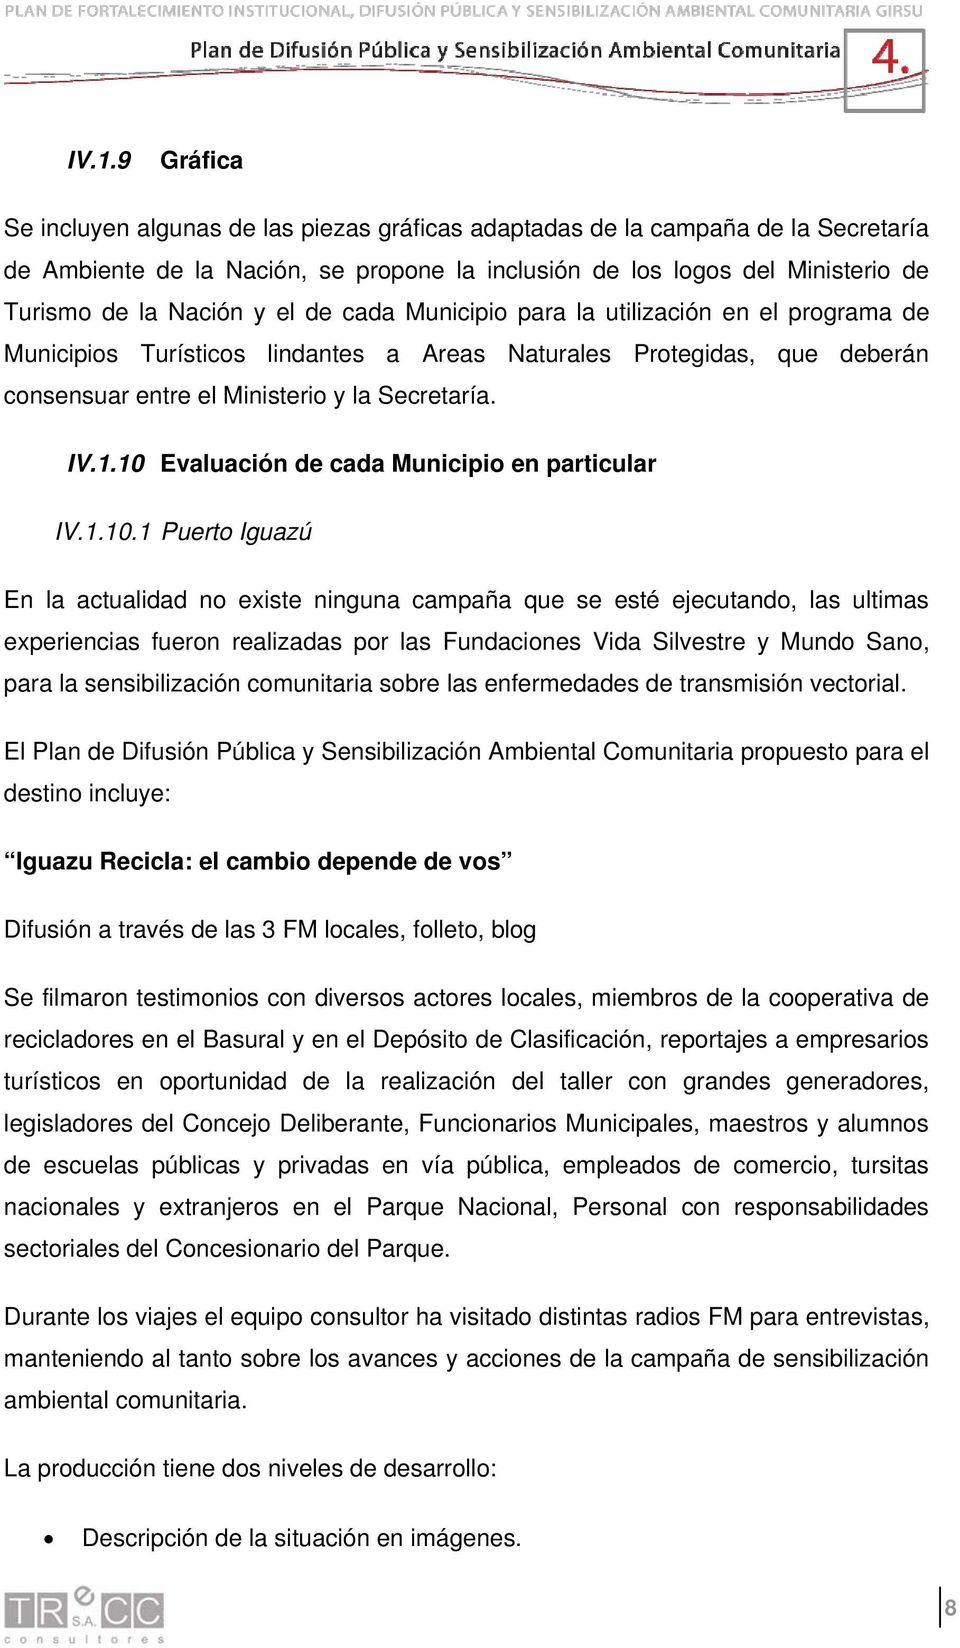 10 Evaluación de cada Municipio en particular IV.1.10.1 Puerto Iguazú En la actualidad no existe ninguna campaña que se esté ejecutando, las ultimas experiencias fueron realizadas por las Fundaciones